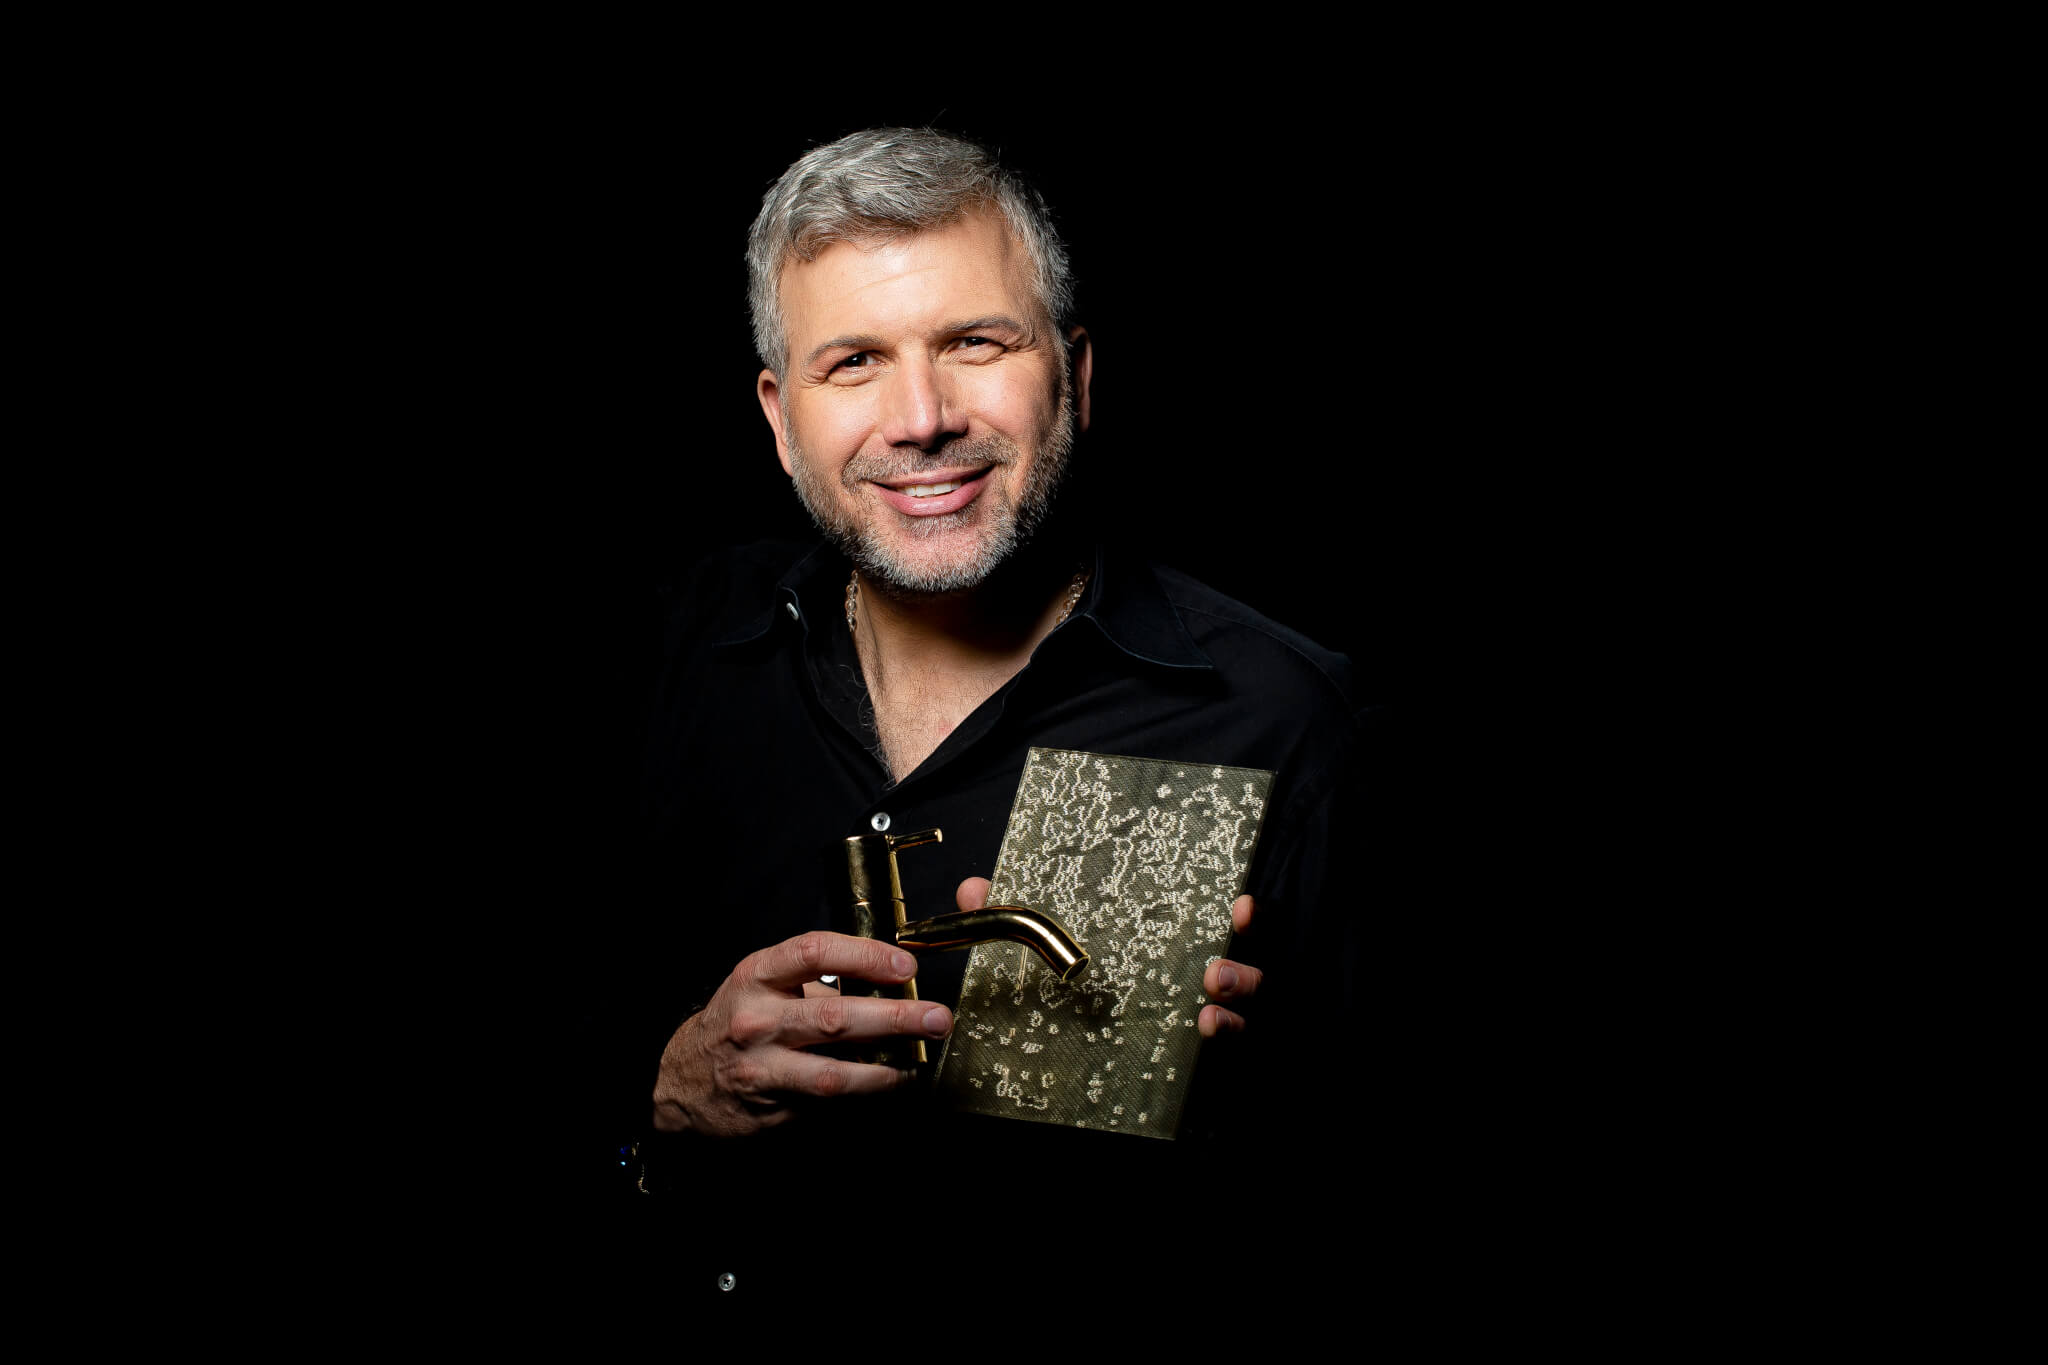 Torsten Müller hält lächelnd goldene Badezimmer Armaturen in den Händen.